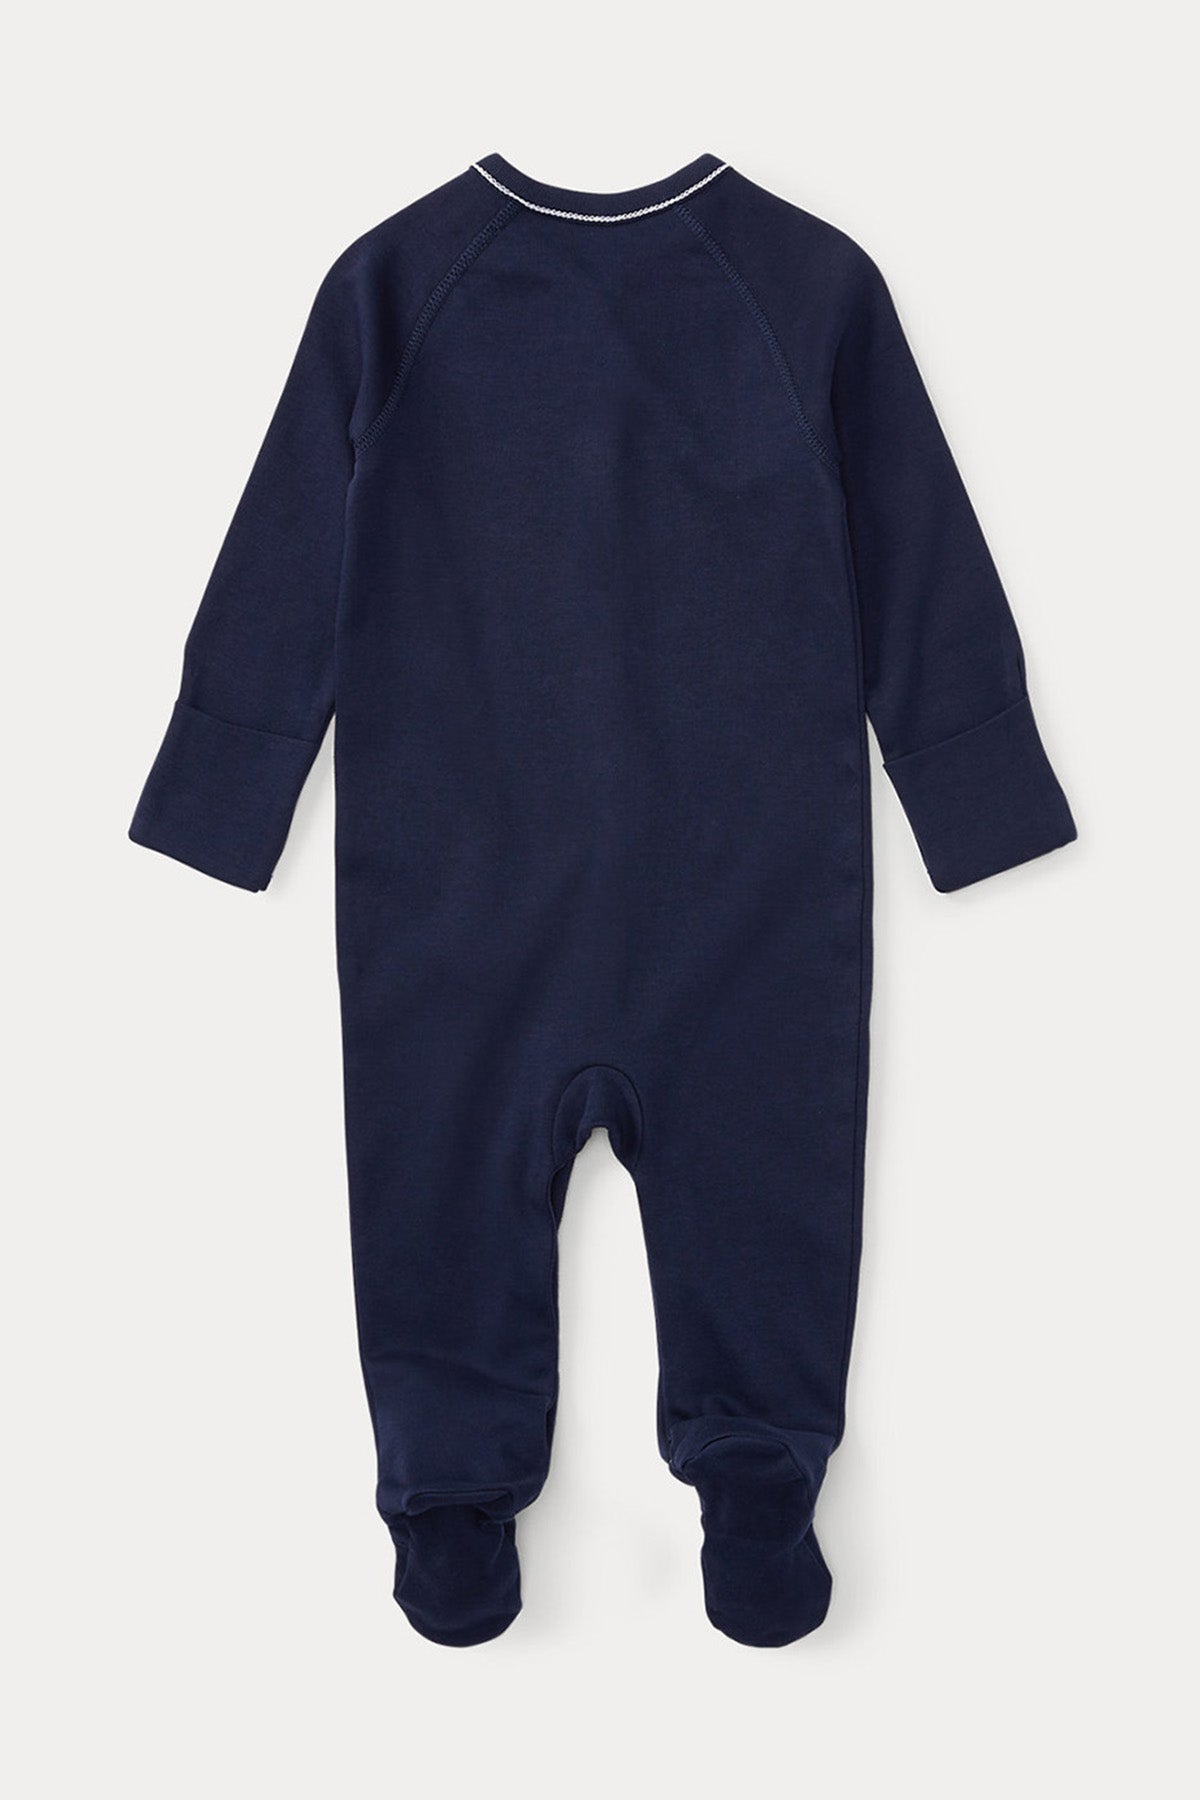 Polo Ralph Lauren Kids Yeni Doğan-6 Aylık Erkek Bebek Tulum-Libas Trendy Fashion Store